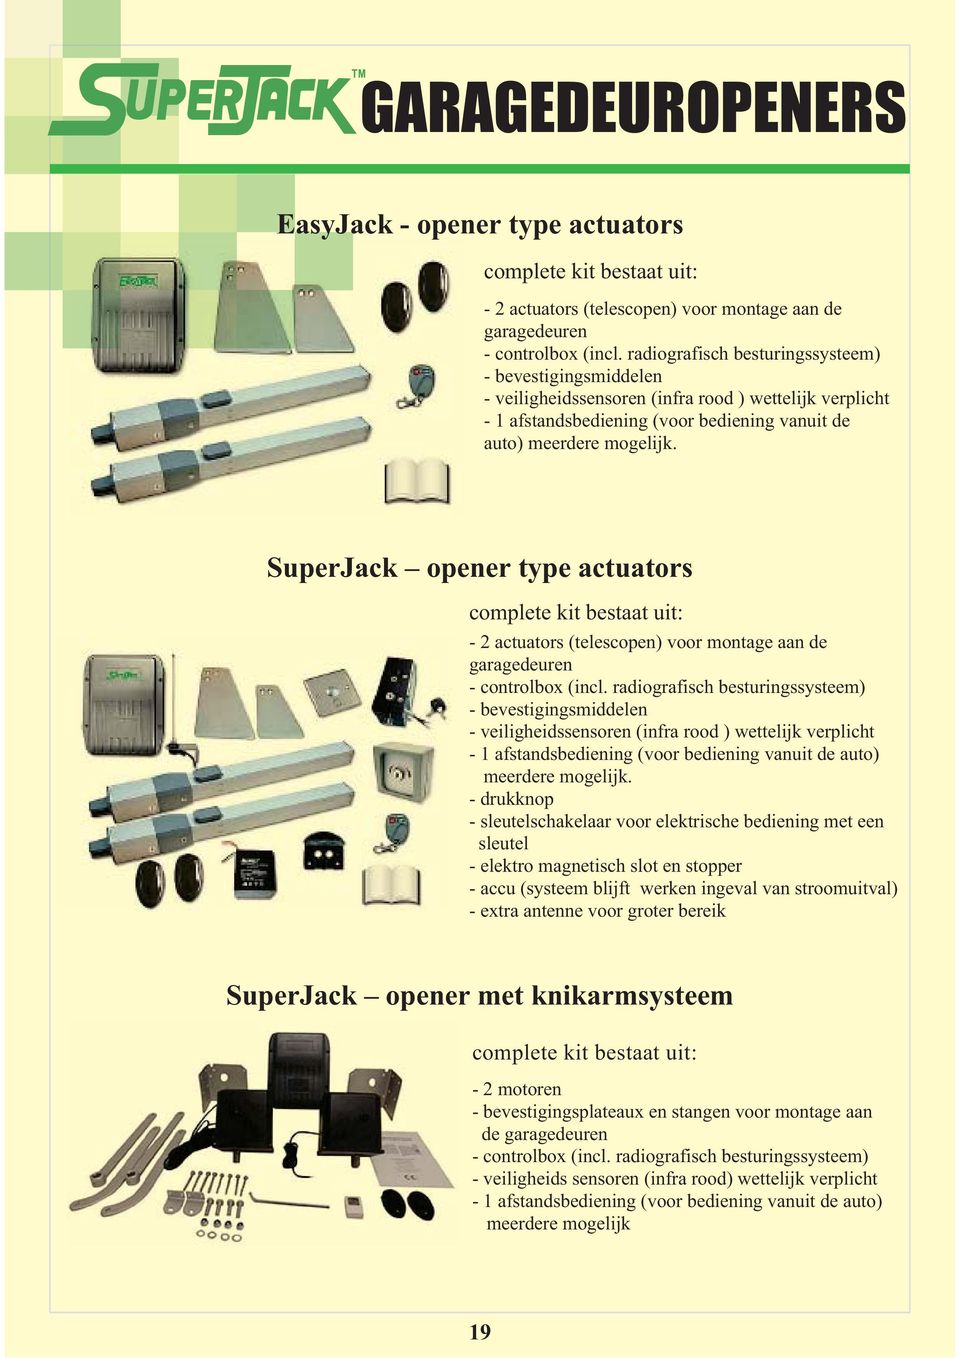 SuperJack opener type actuators complete kit bestaat uit: - 2 actuators (telescopen) voor montage aan de garagedeuren - controlbox (incl.